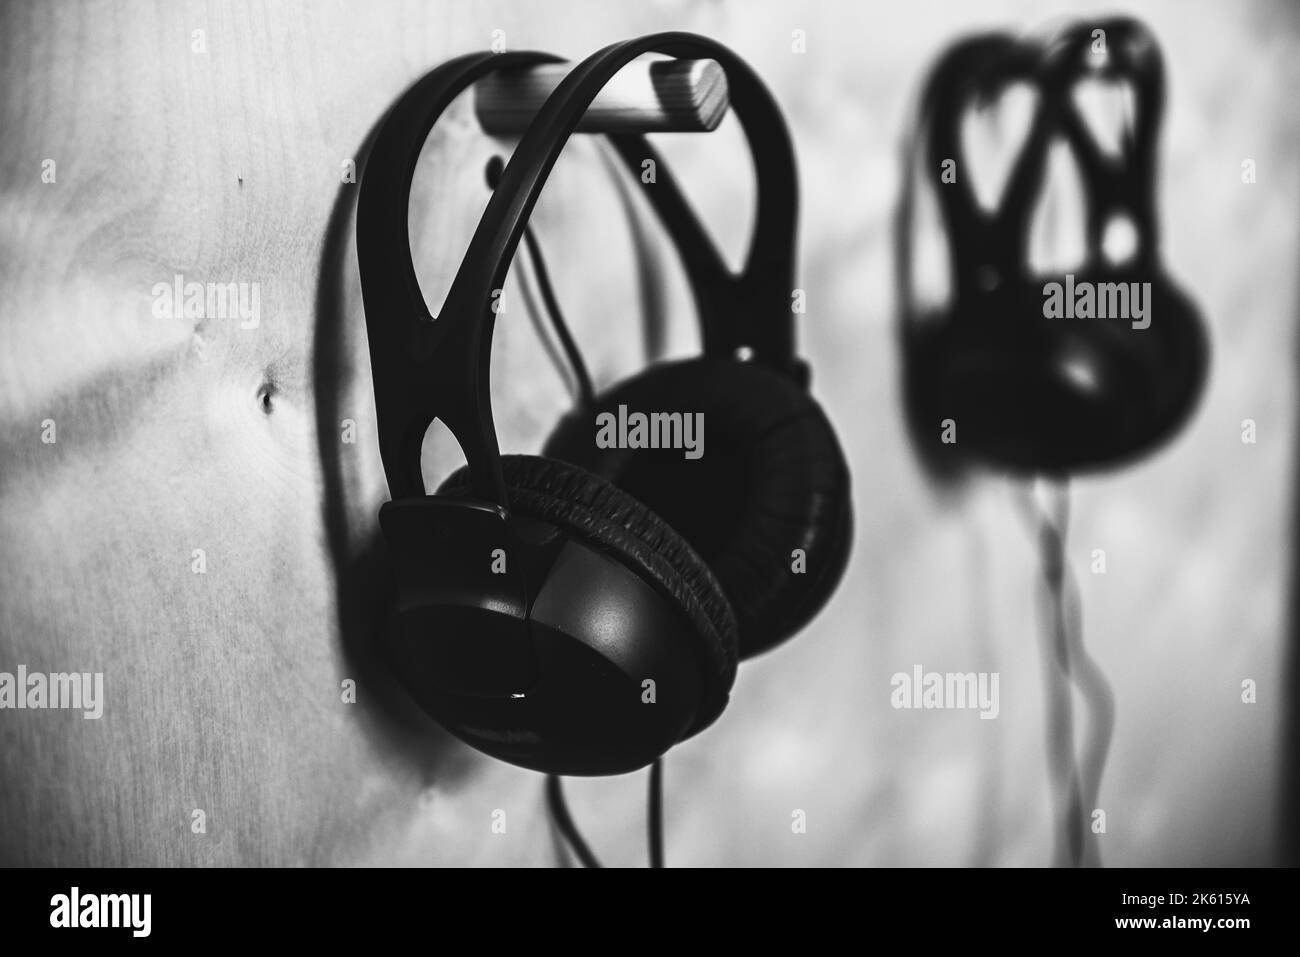 Le cuffie sono appese alla parete in uno studio musicale. Fotografia in bianco e nero. Foto Stock